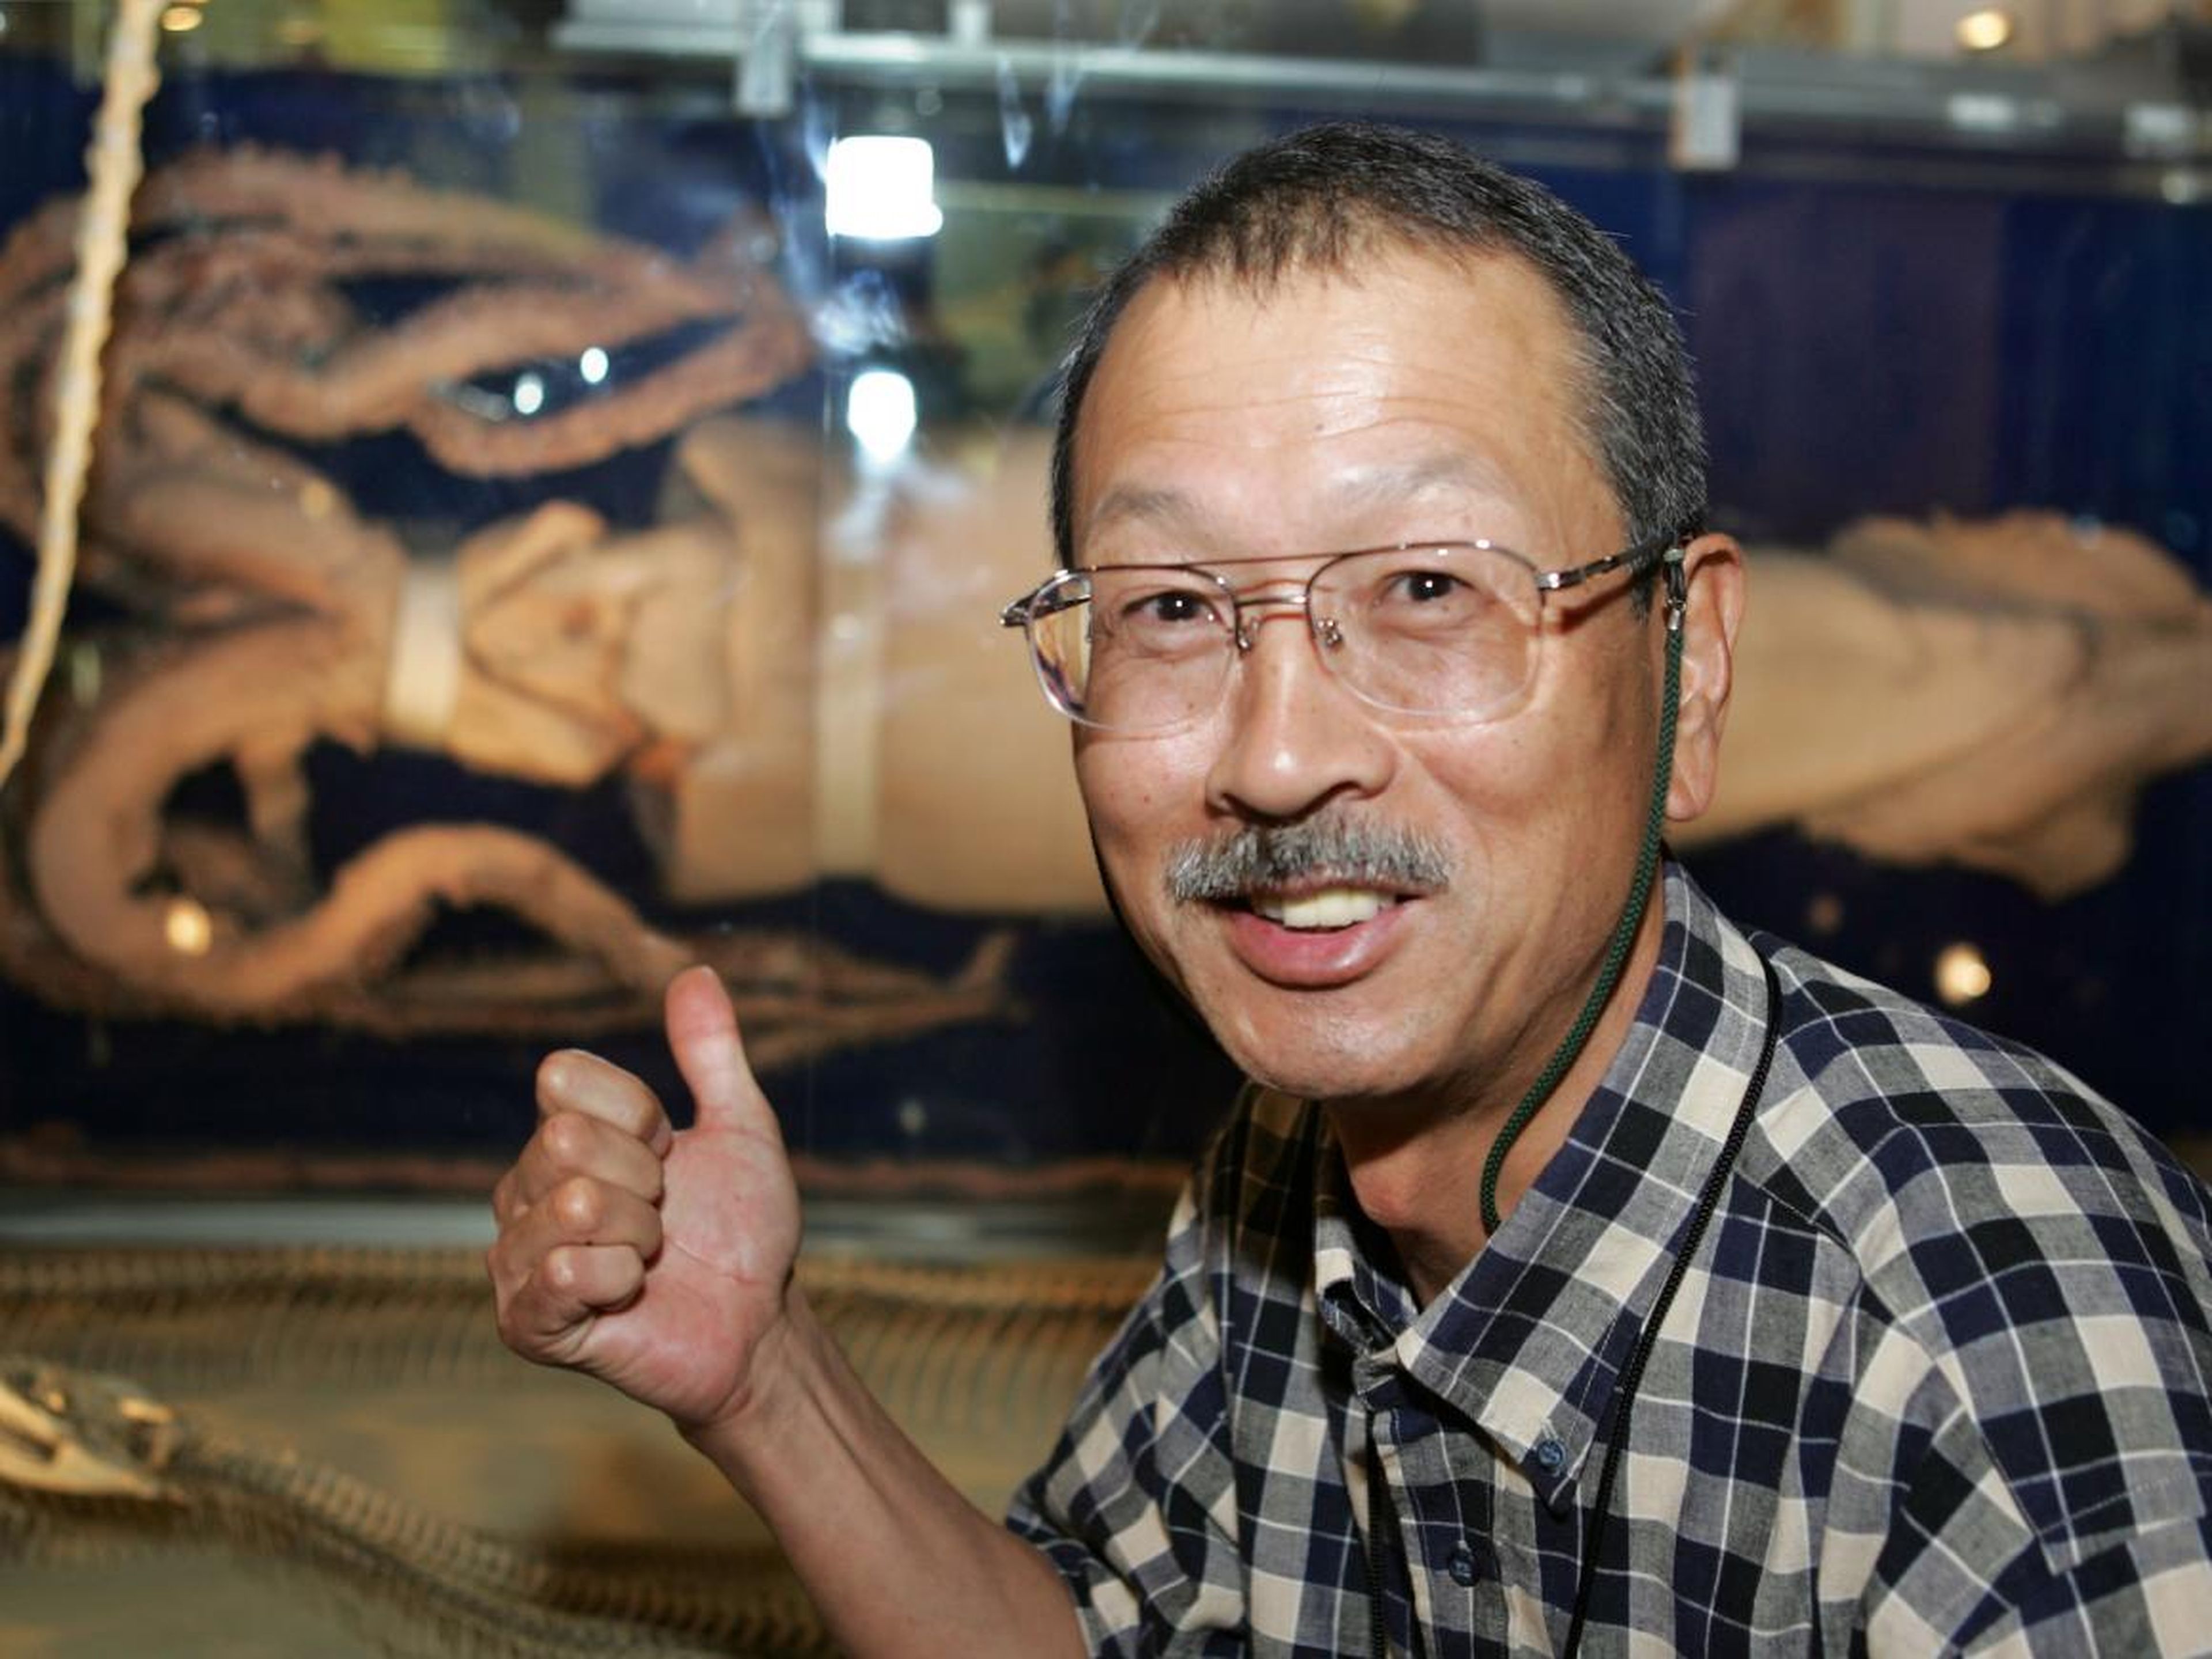 El investigador japonés Tsunemi Kubodera sonríe mientras muestra un calamar gigante en exhibición en el Museo Nacional de Ciencias en Tokio el 28 de septiembre de 2005.